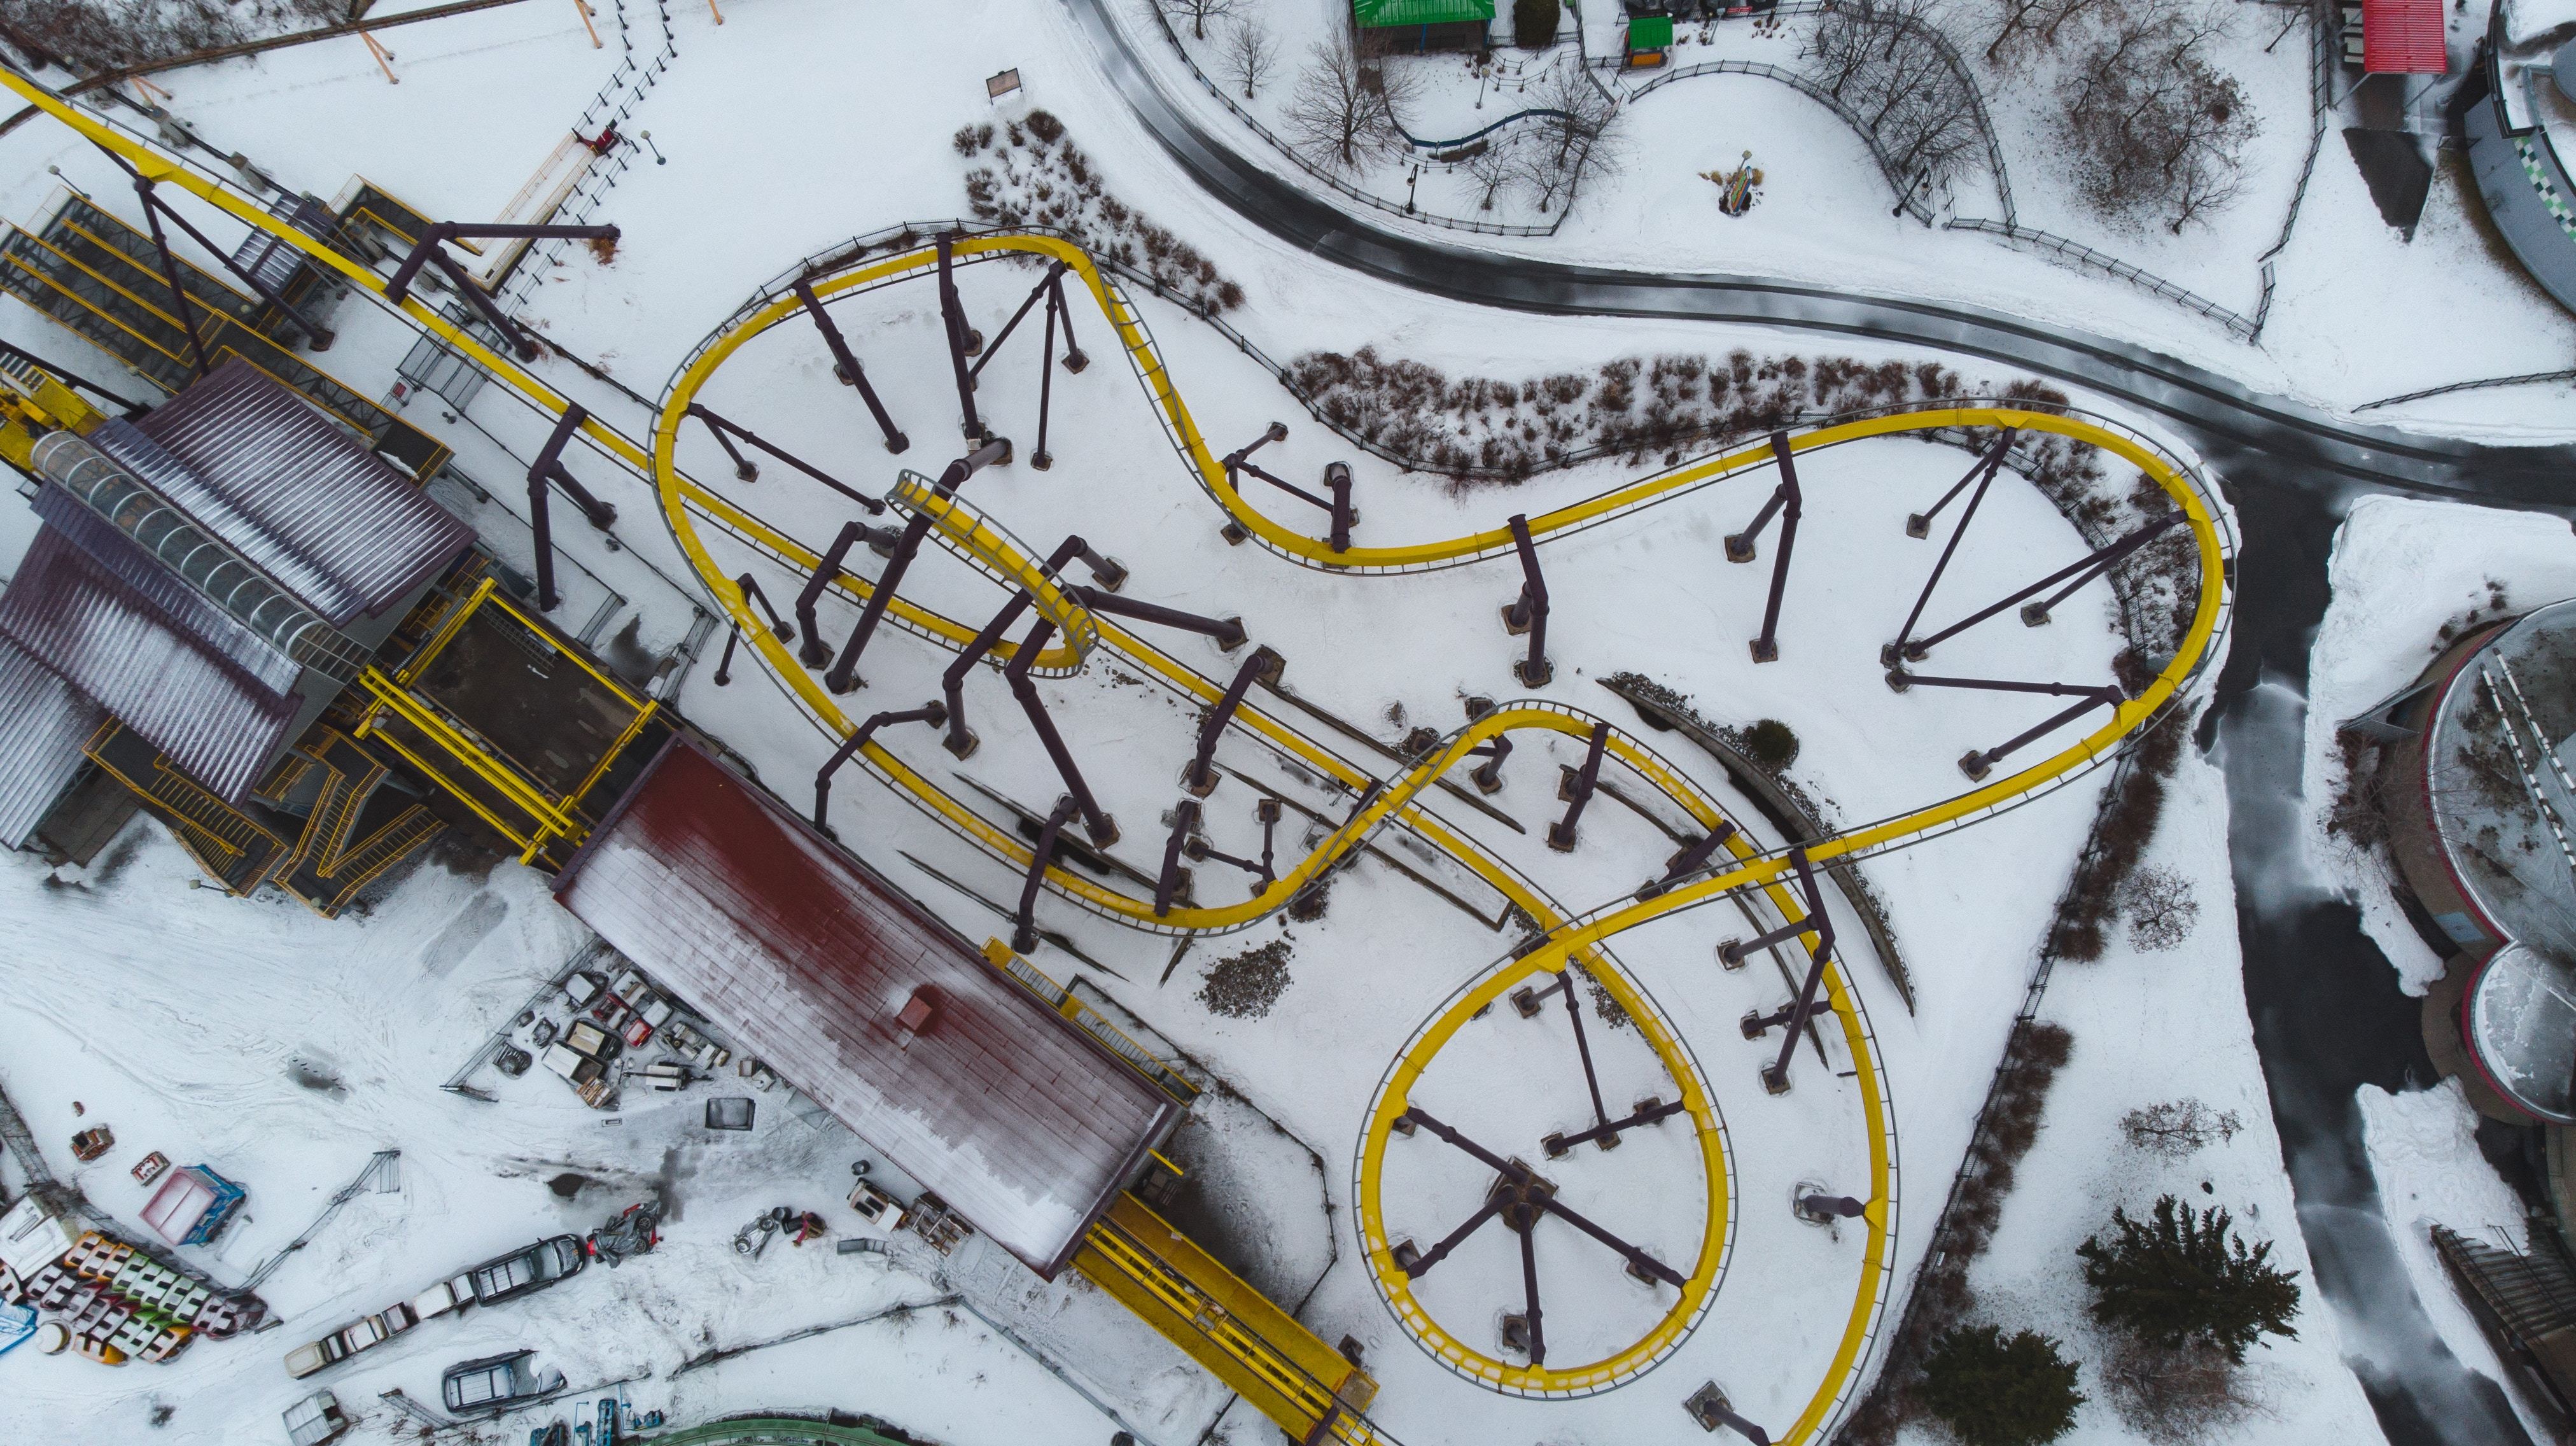 multiples roller coaster sous la neige avec un grand tobogan jaune